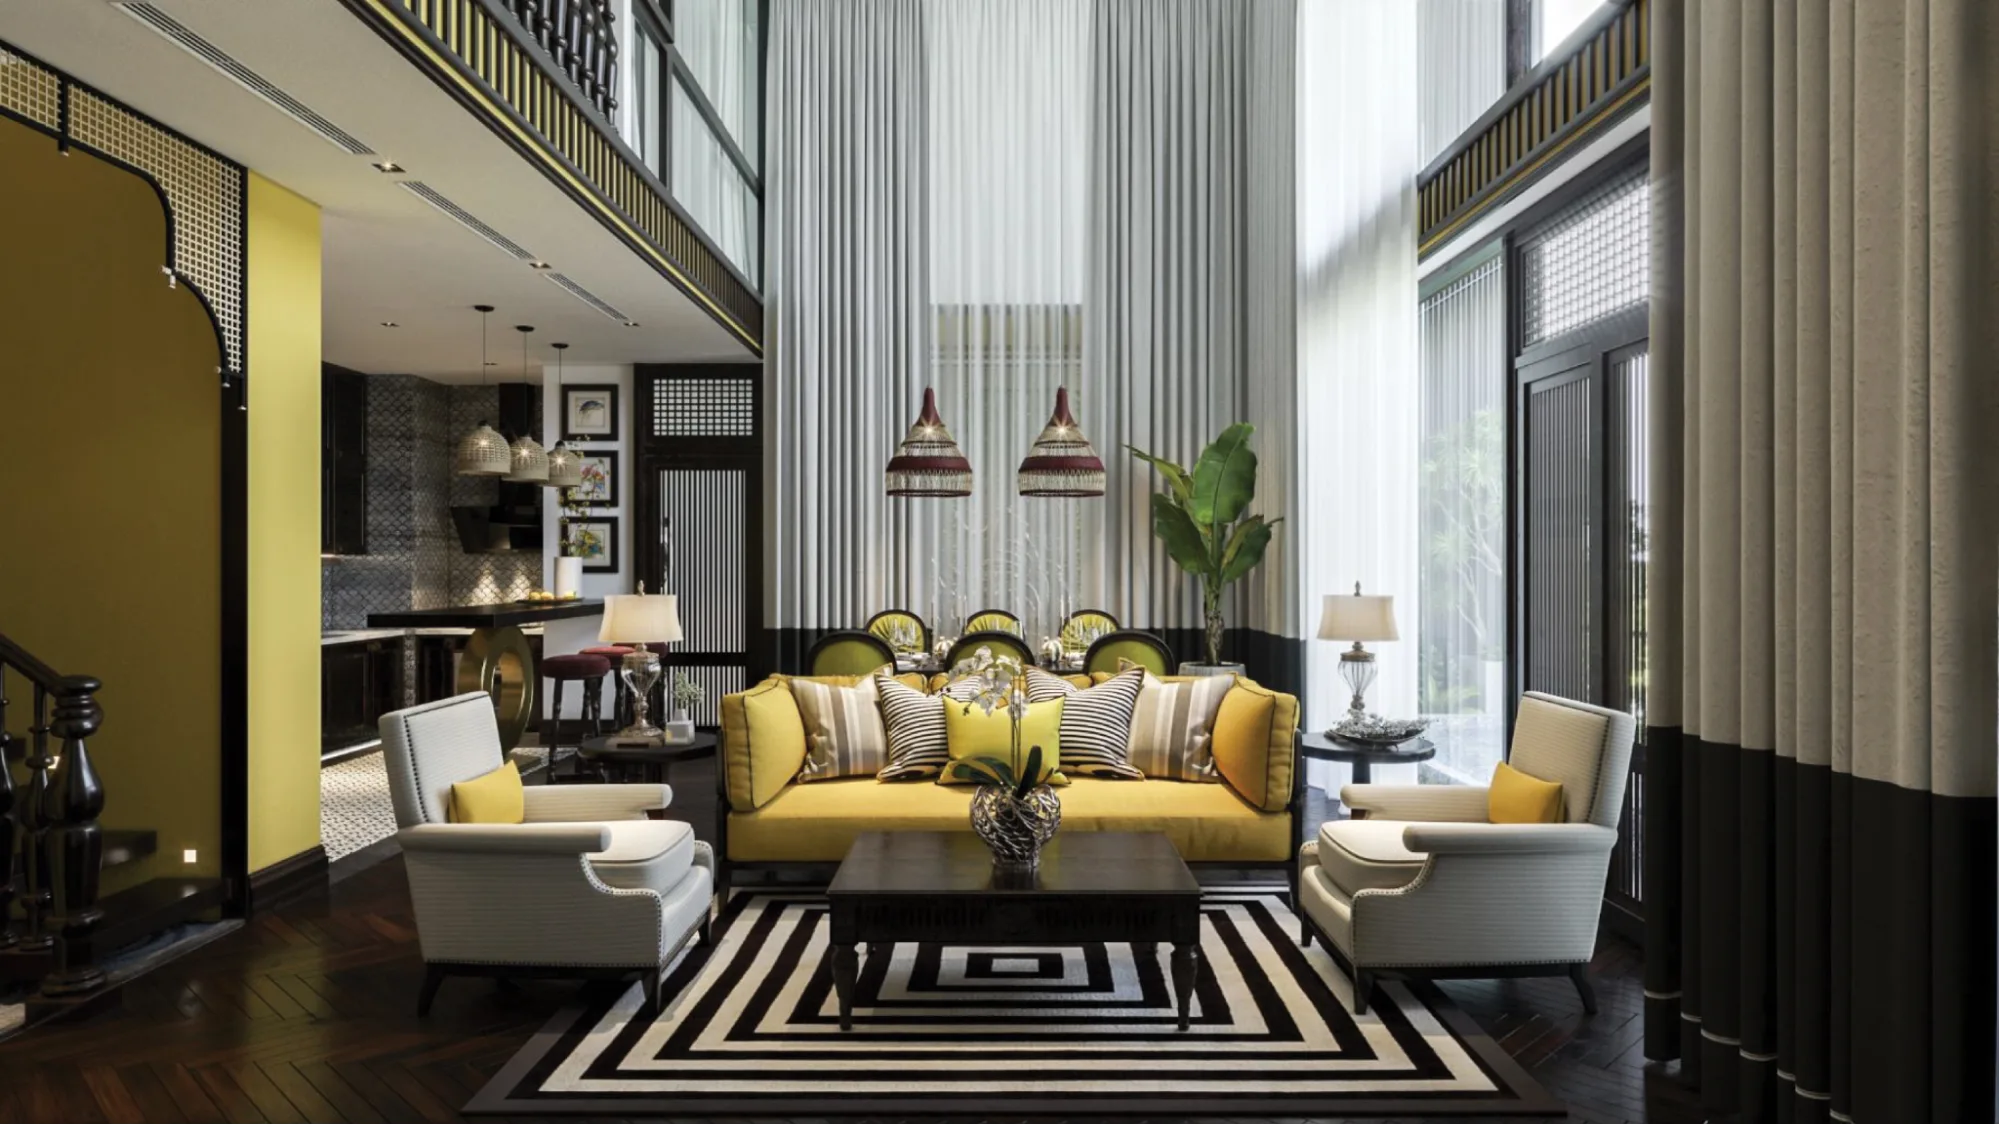 Chiêm ngưỡng mẫu căn hộ duplex thiết kế theo phong cách Indochine